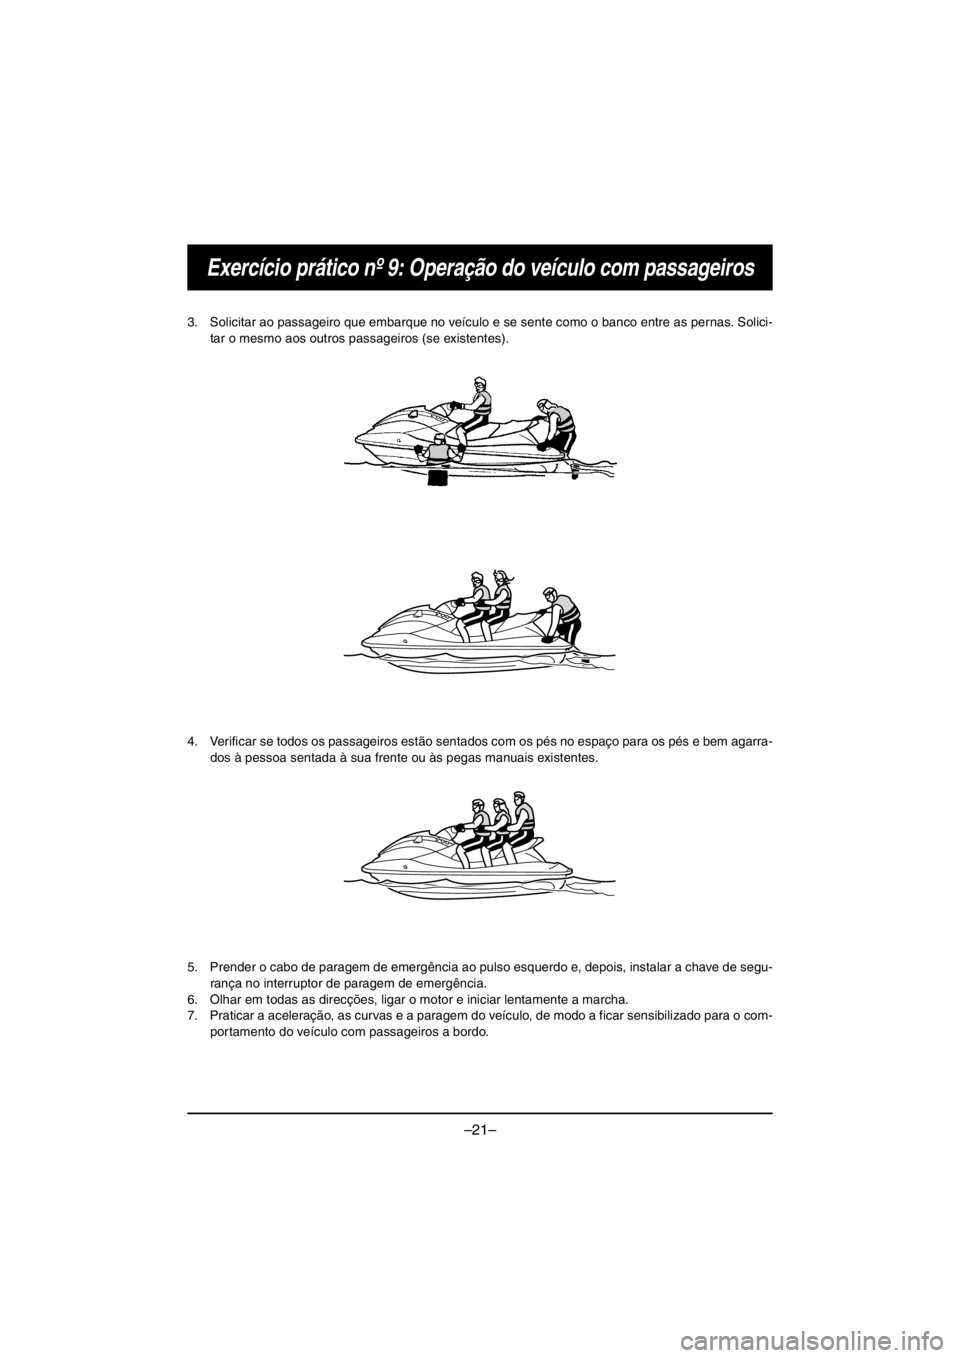 YAMAHA V1 2016  Notices Demploi (in French) –21–
Exercício prático nº 9: Operação do veículo com passageiros
3. Solicitar ao passageiro que embarque no veículo e se sente como o banco entre as pernas. Solici-
tar o mesmo aos outros p